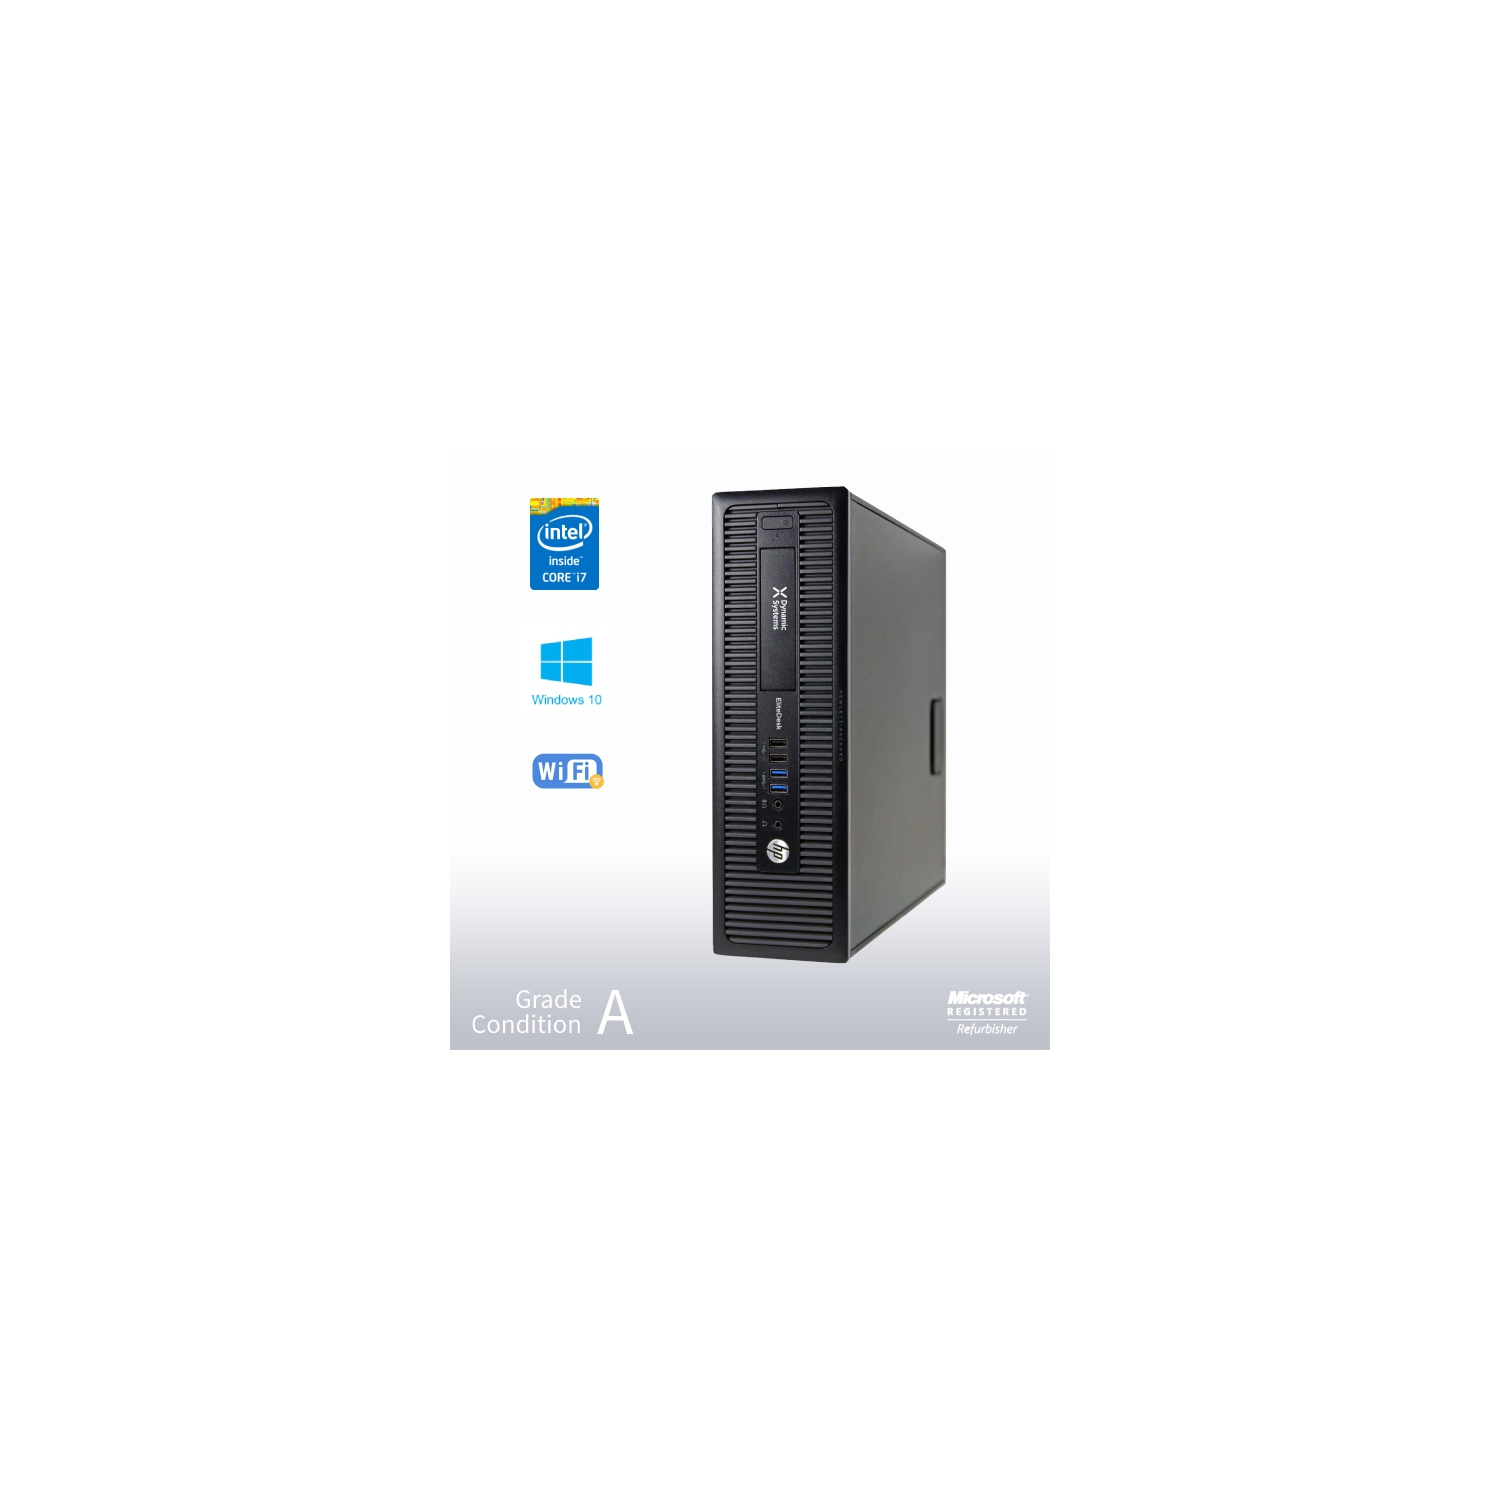 Refurbished (Good) - HP ProDesk 800 G1 SFF Desktop, Intel i7 4770 3.4GHz/8GB /240GB SSD/ DVD/ Win10 Pro/Fast AC 600 WiFi USB